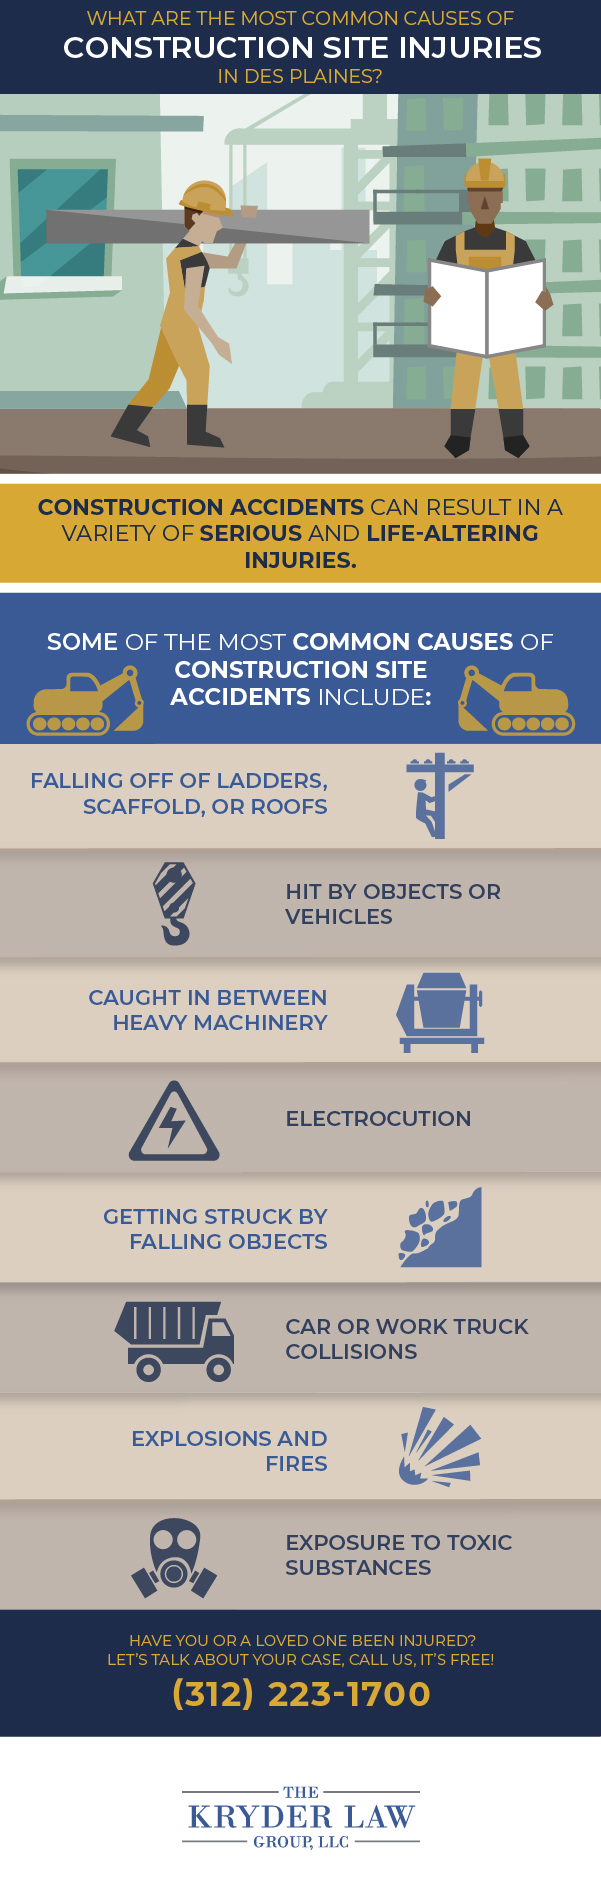 ¿Cuáles son las causas más comunes de lesiones en sitios de construcción en Des Plaines?